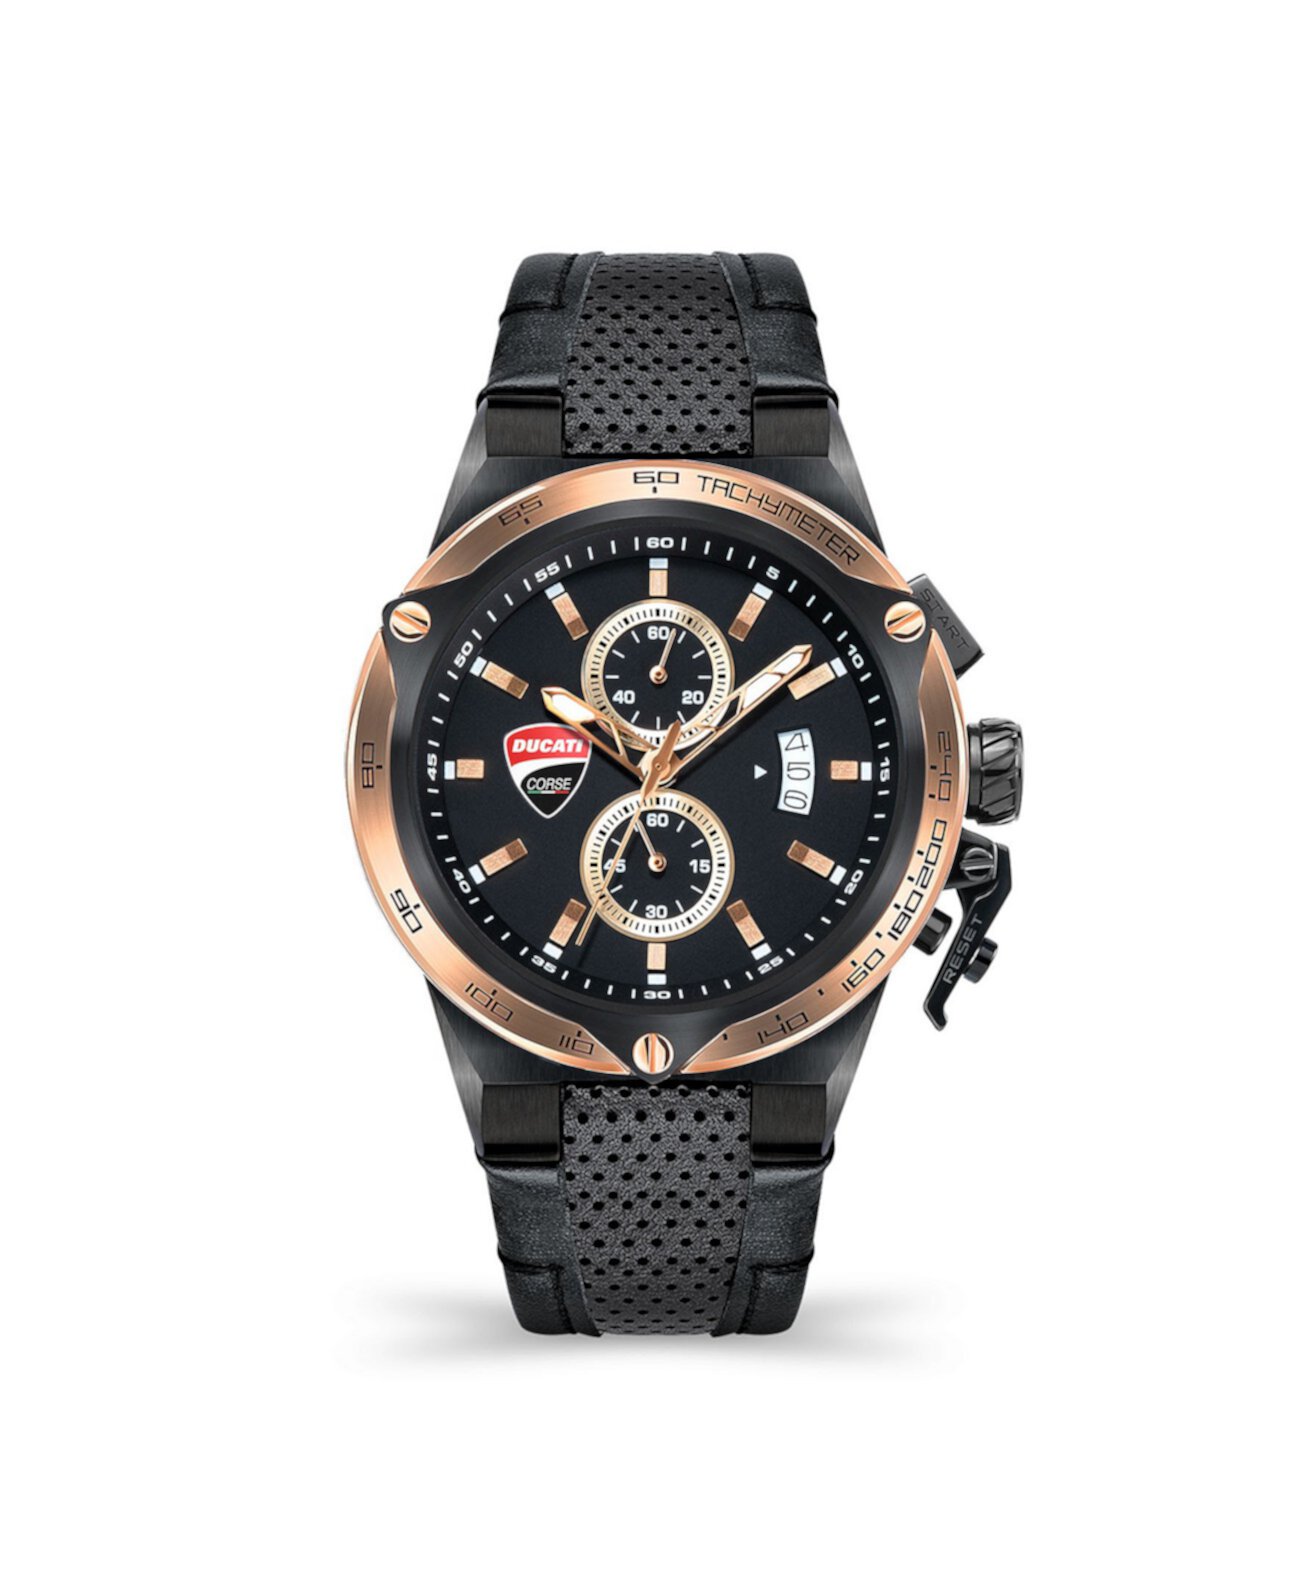 Мужские наручные часы Giro Uno с черным кожаным ремешком 45 мм Ducati Corse